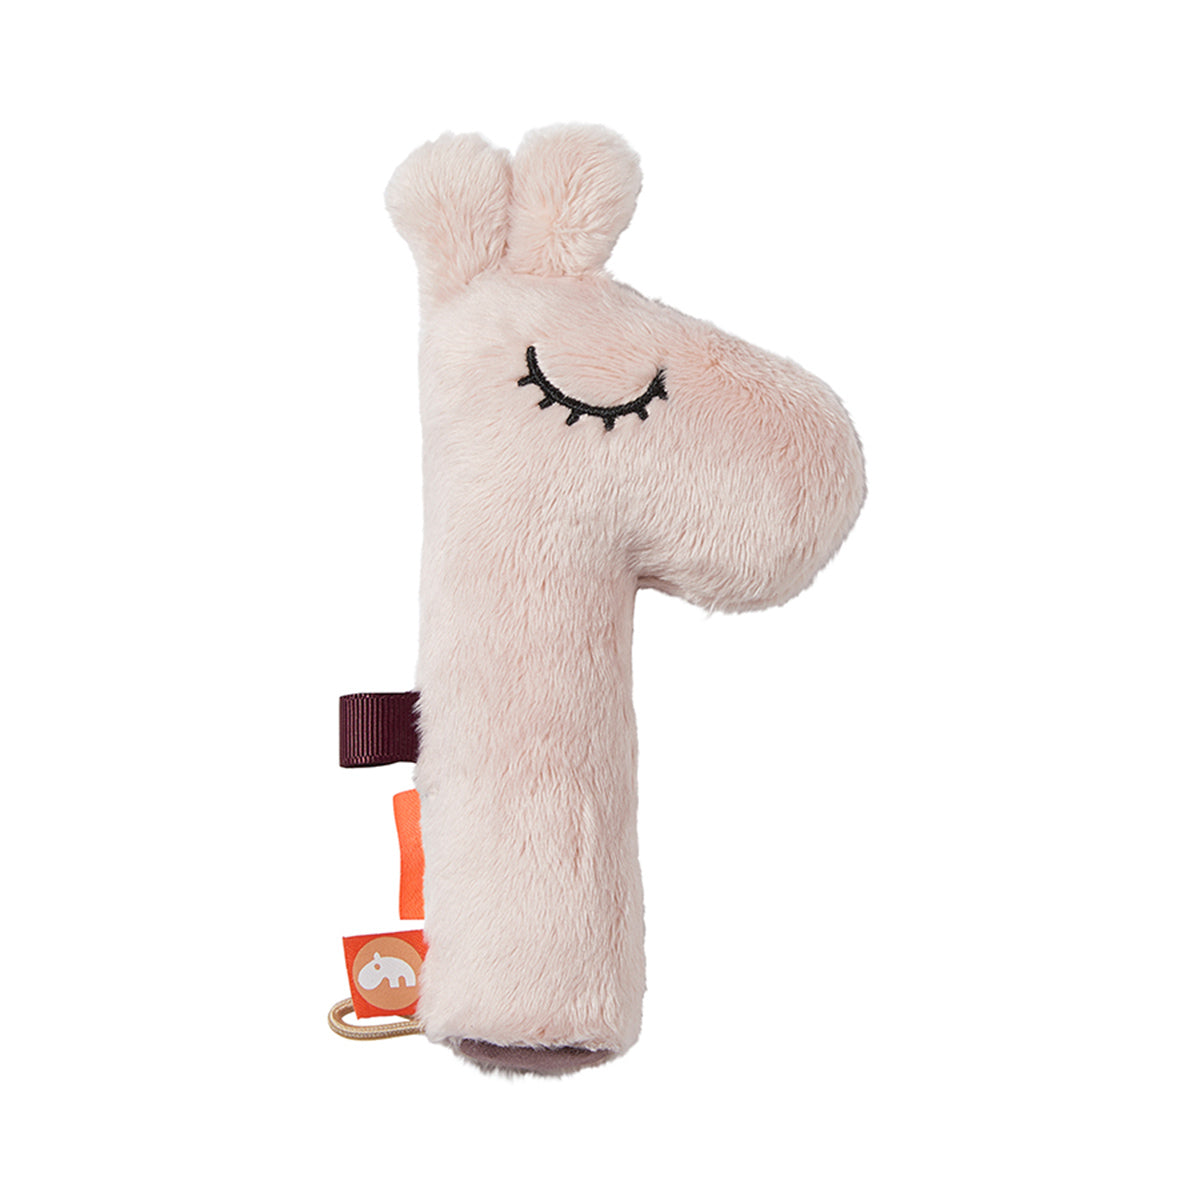 De Done by Deer rammelaar Raffi powder is een leuke baby rammelaar om je baby urenlang te vermaken. De leuke roze giraf maakt vrolijke rammel- en piepgeluiden. Leuk én educatief. VanZus